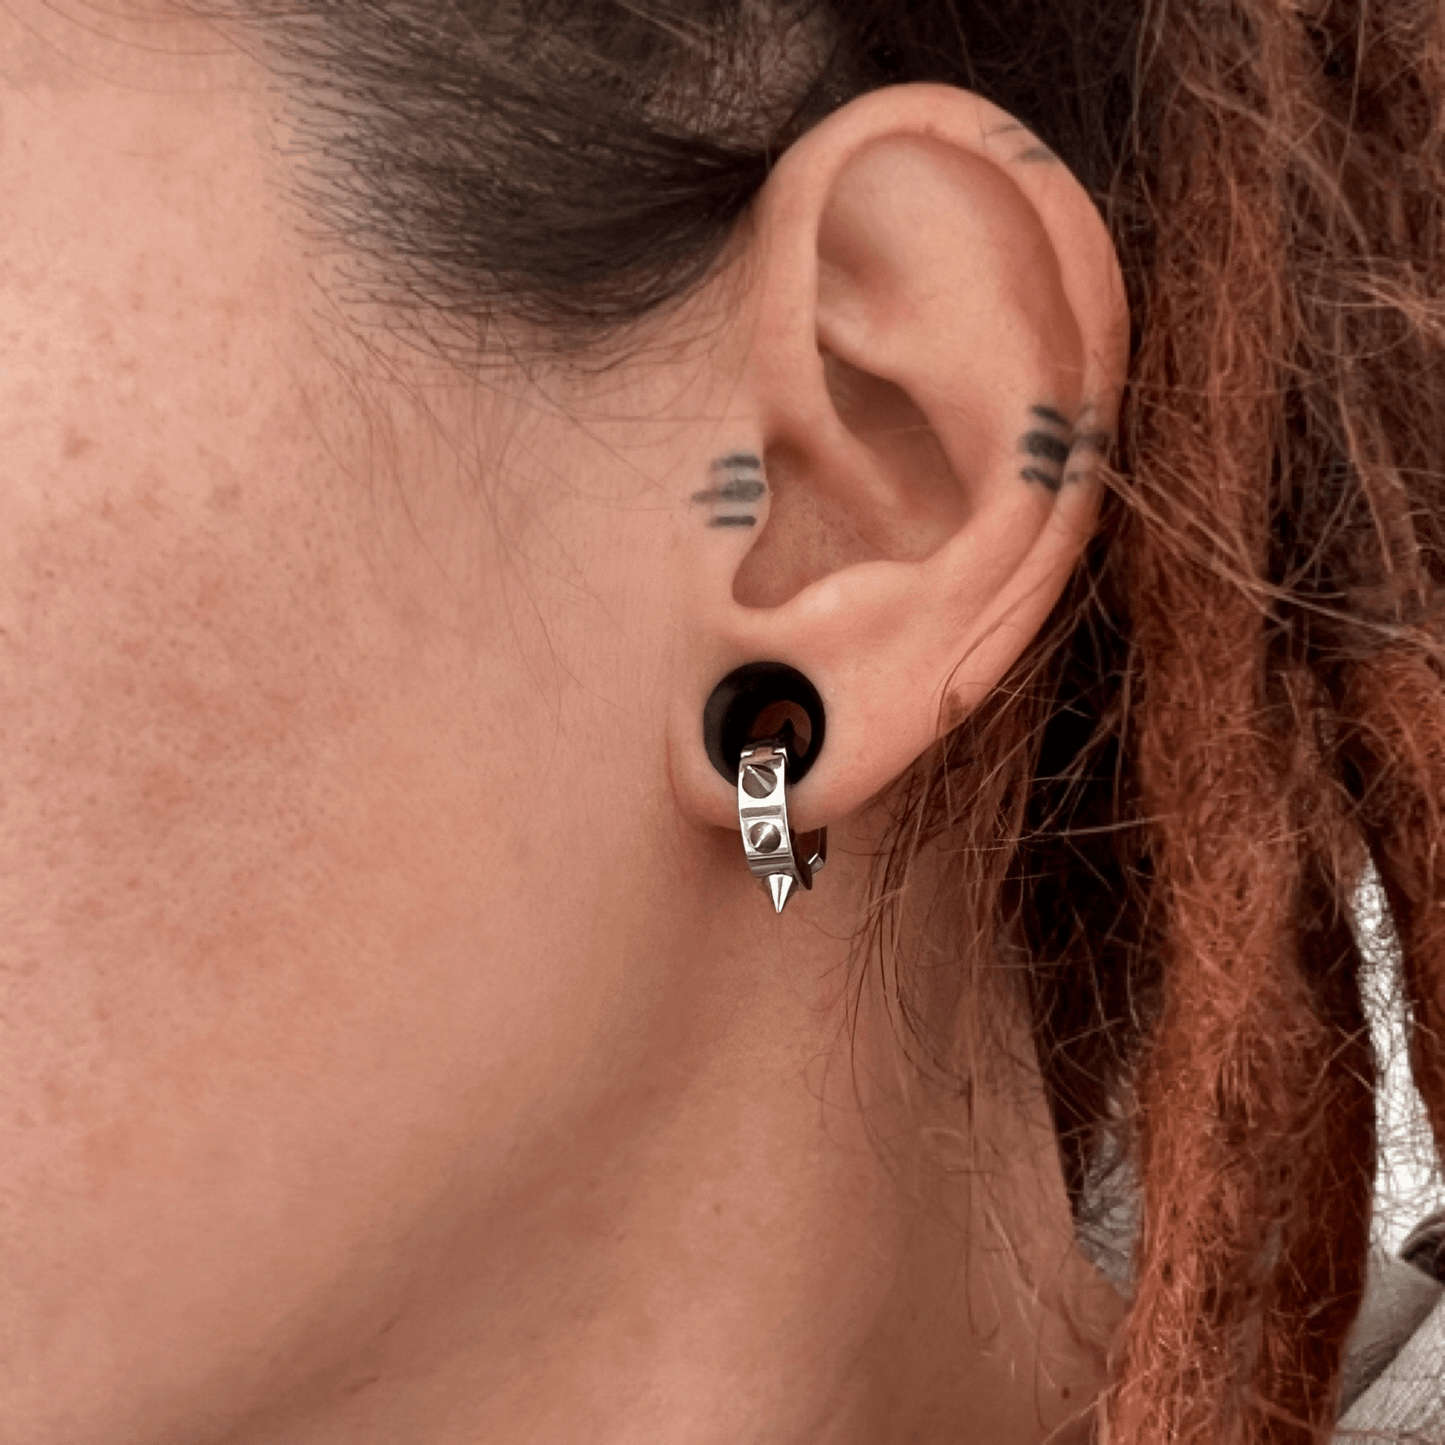 Spiked Ear Cuffs | Spike Clip Earrings - DustyJewelz